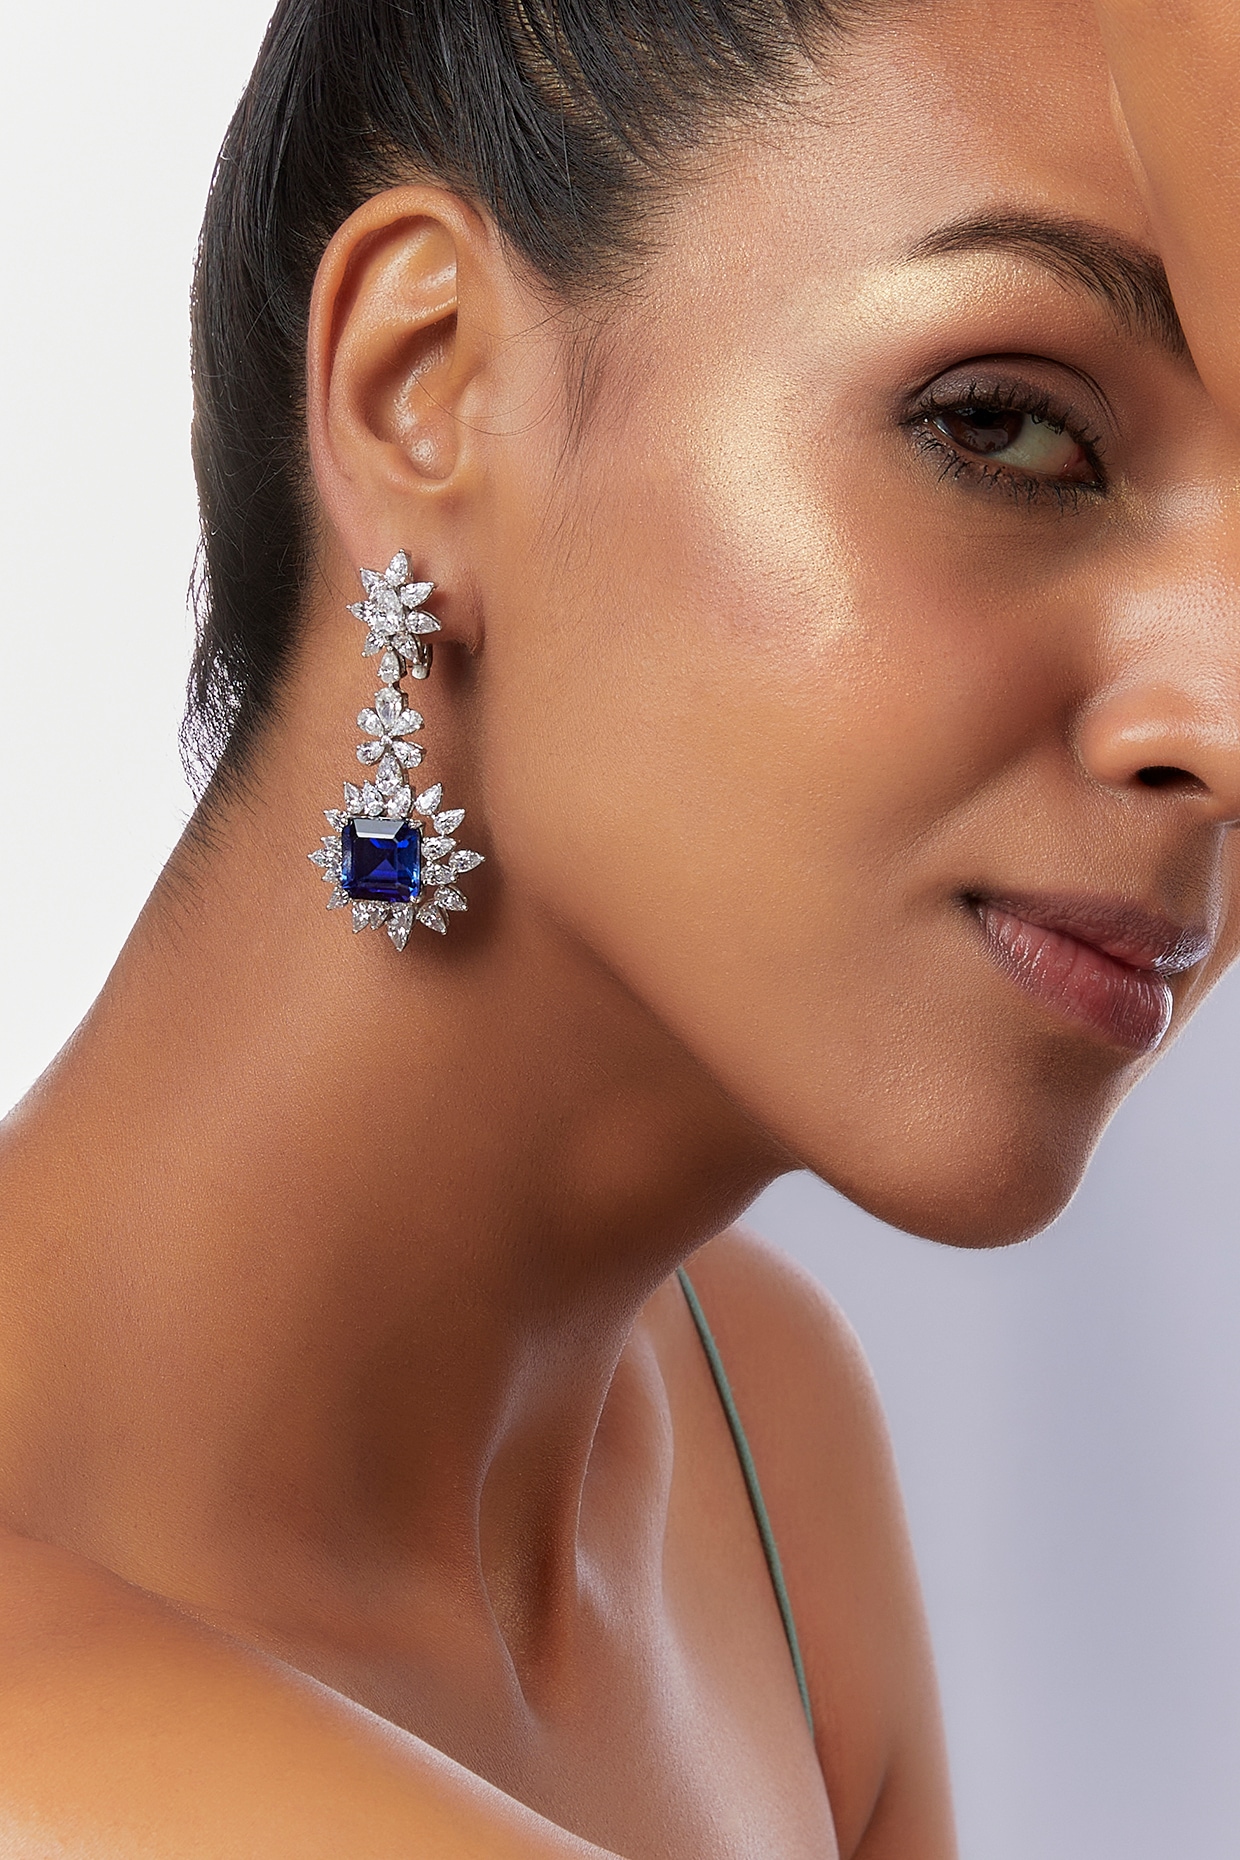 Swarovski Crystal Teardrop Earrings Navette Drop Earrings Wedding Jewelry  Bridesmaid Gift Cubic Zirc on Luulla